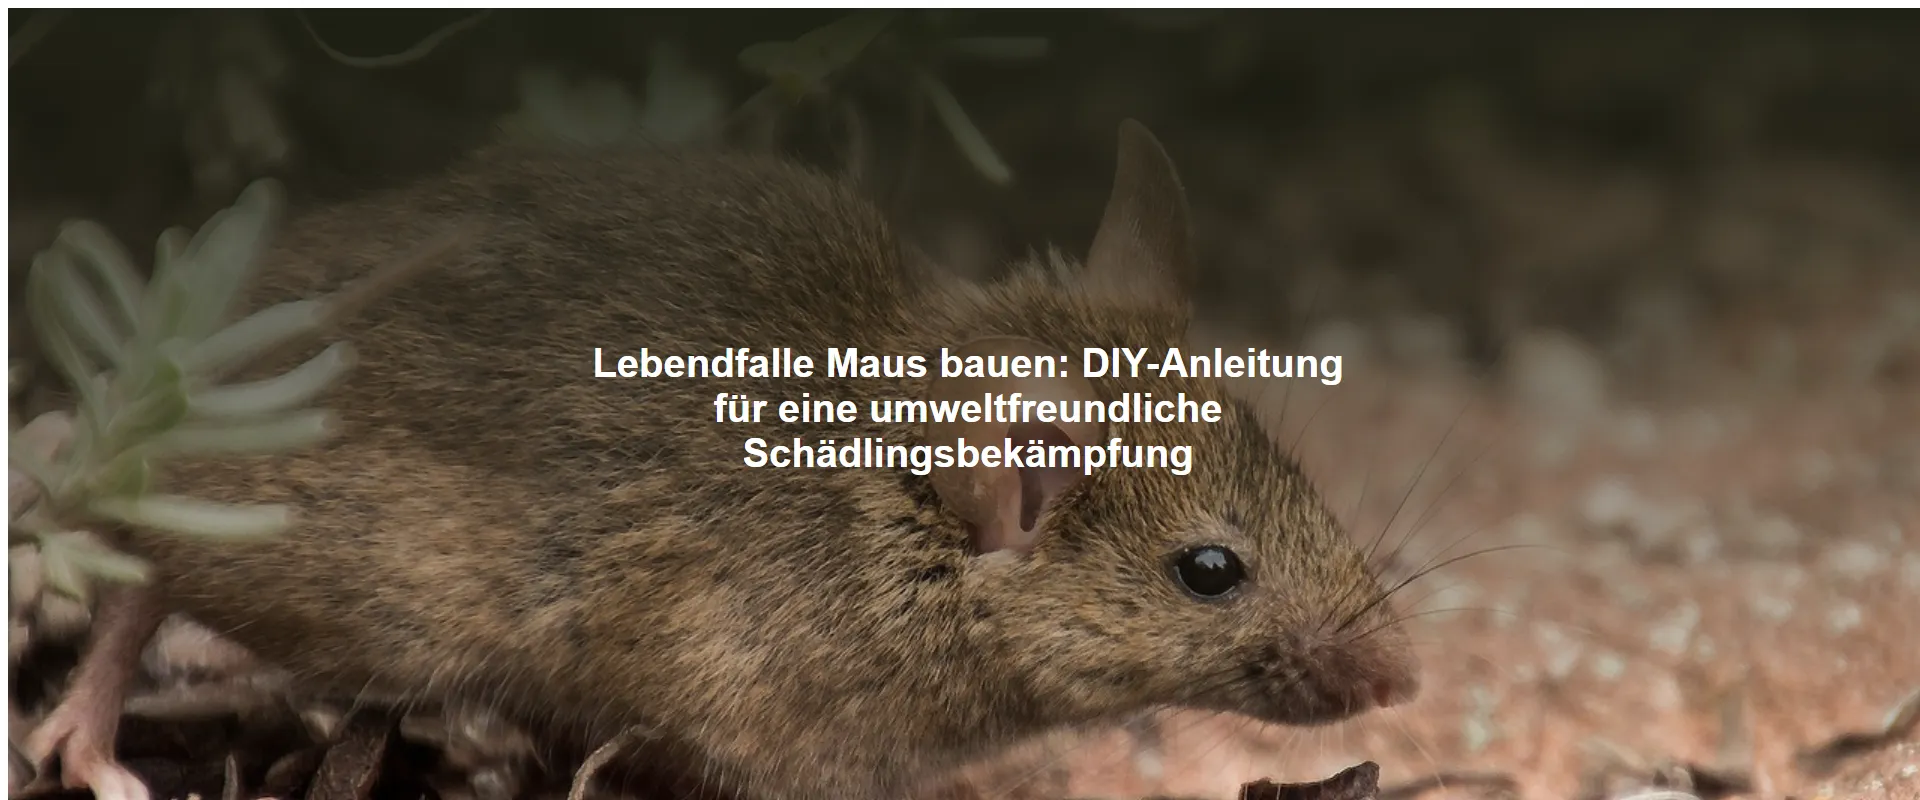 Lebendfalle Maus bauen – DIY-Anleitung für eine umweltfreundliche Schädlingsbekämpfung